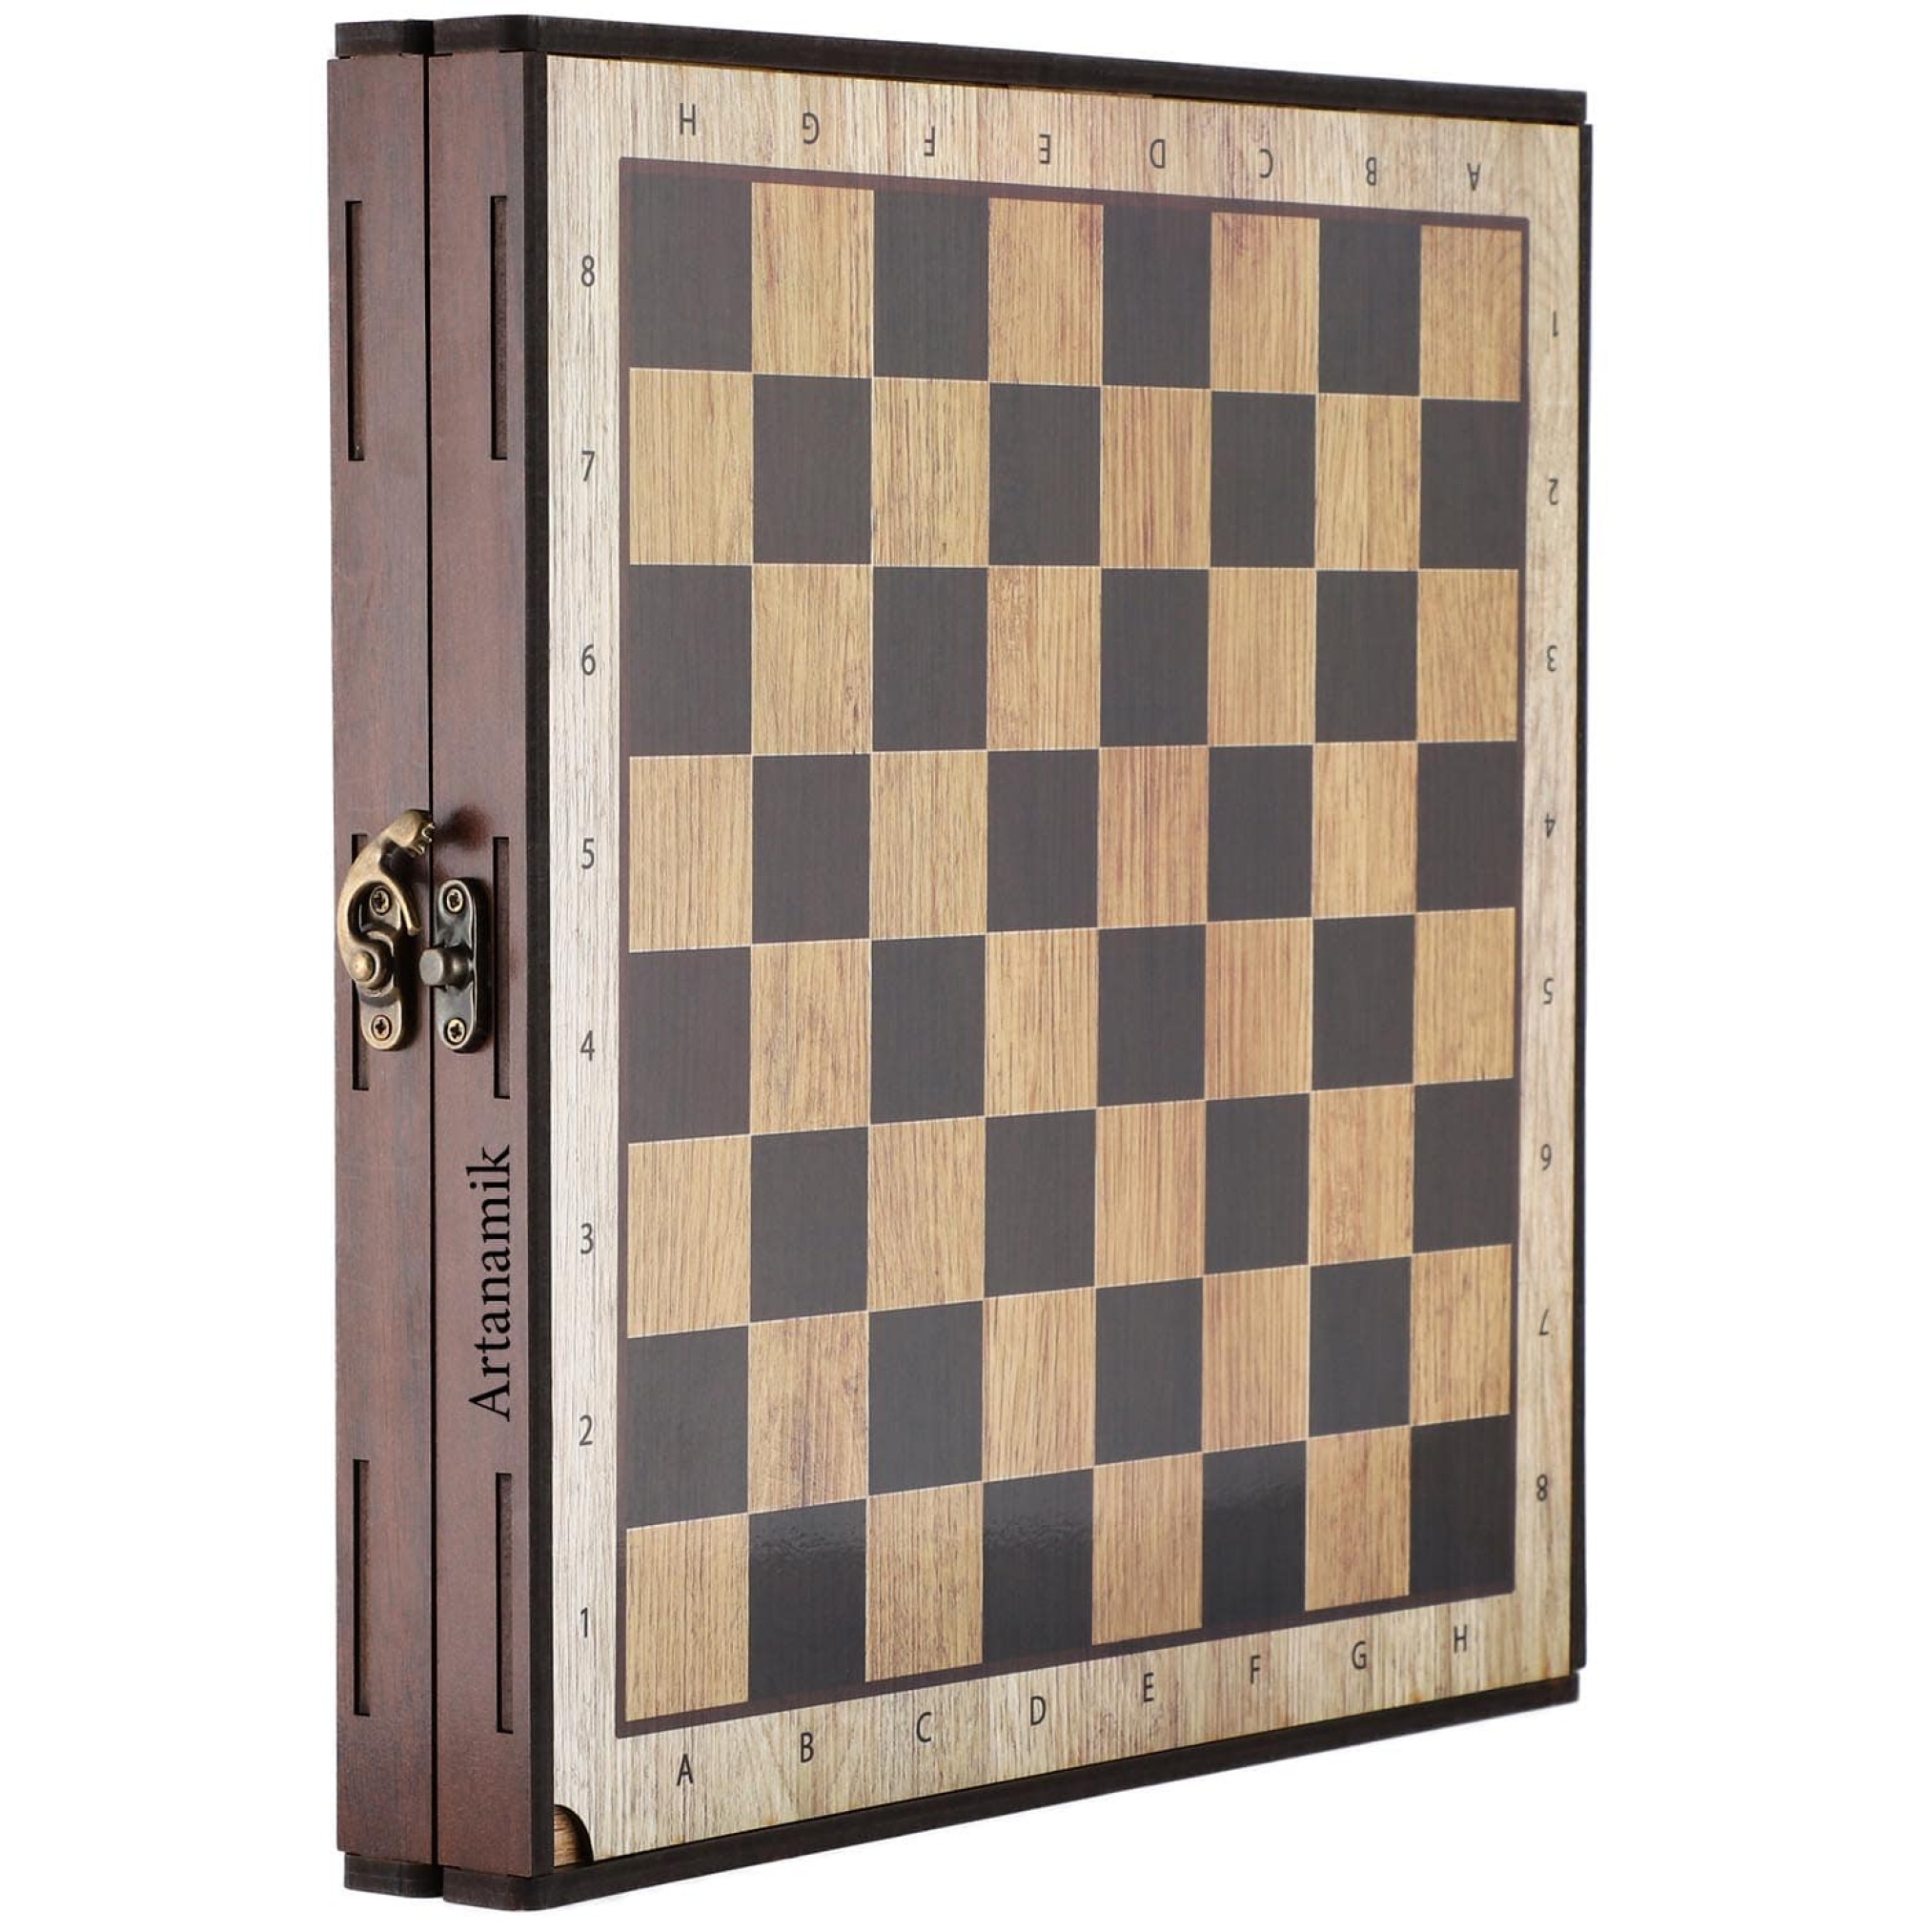  شطرنج شش بازی چوبی همراه با قفل 